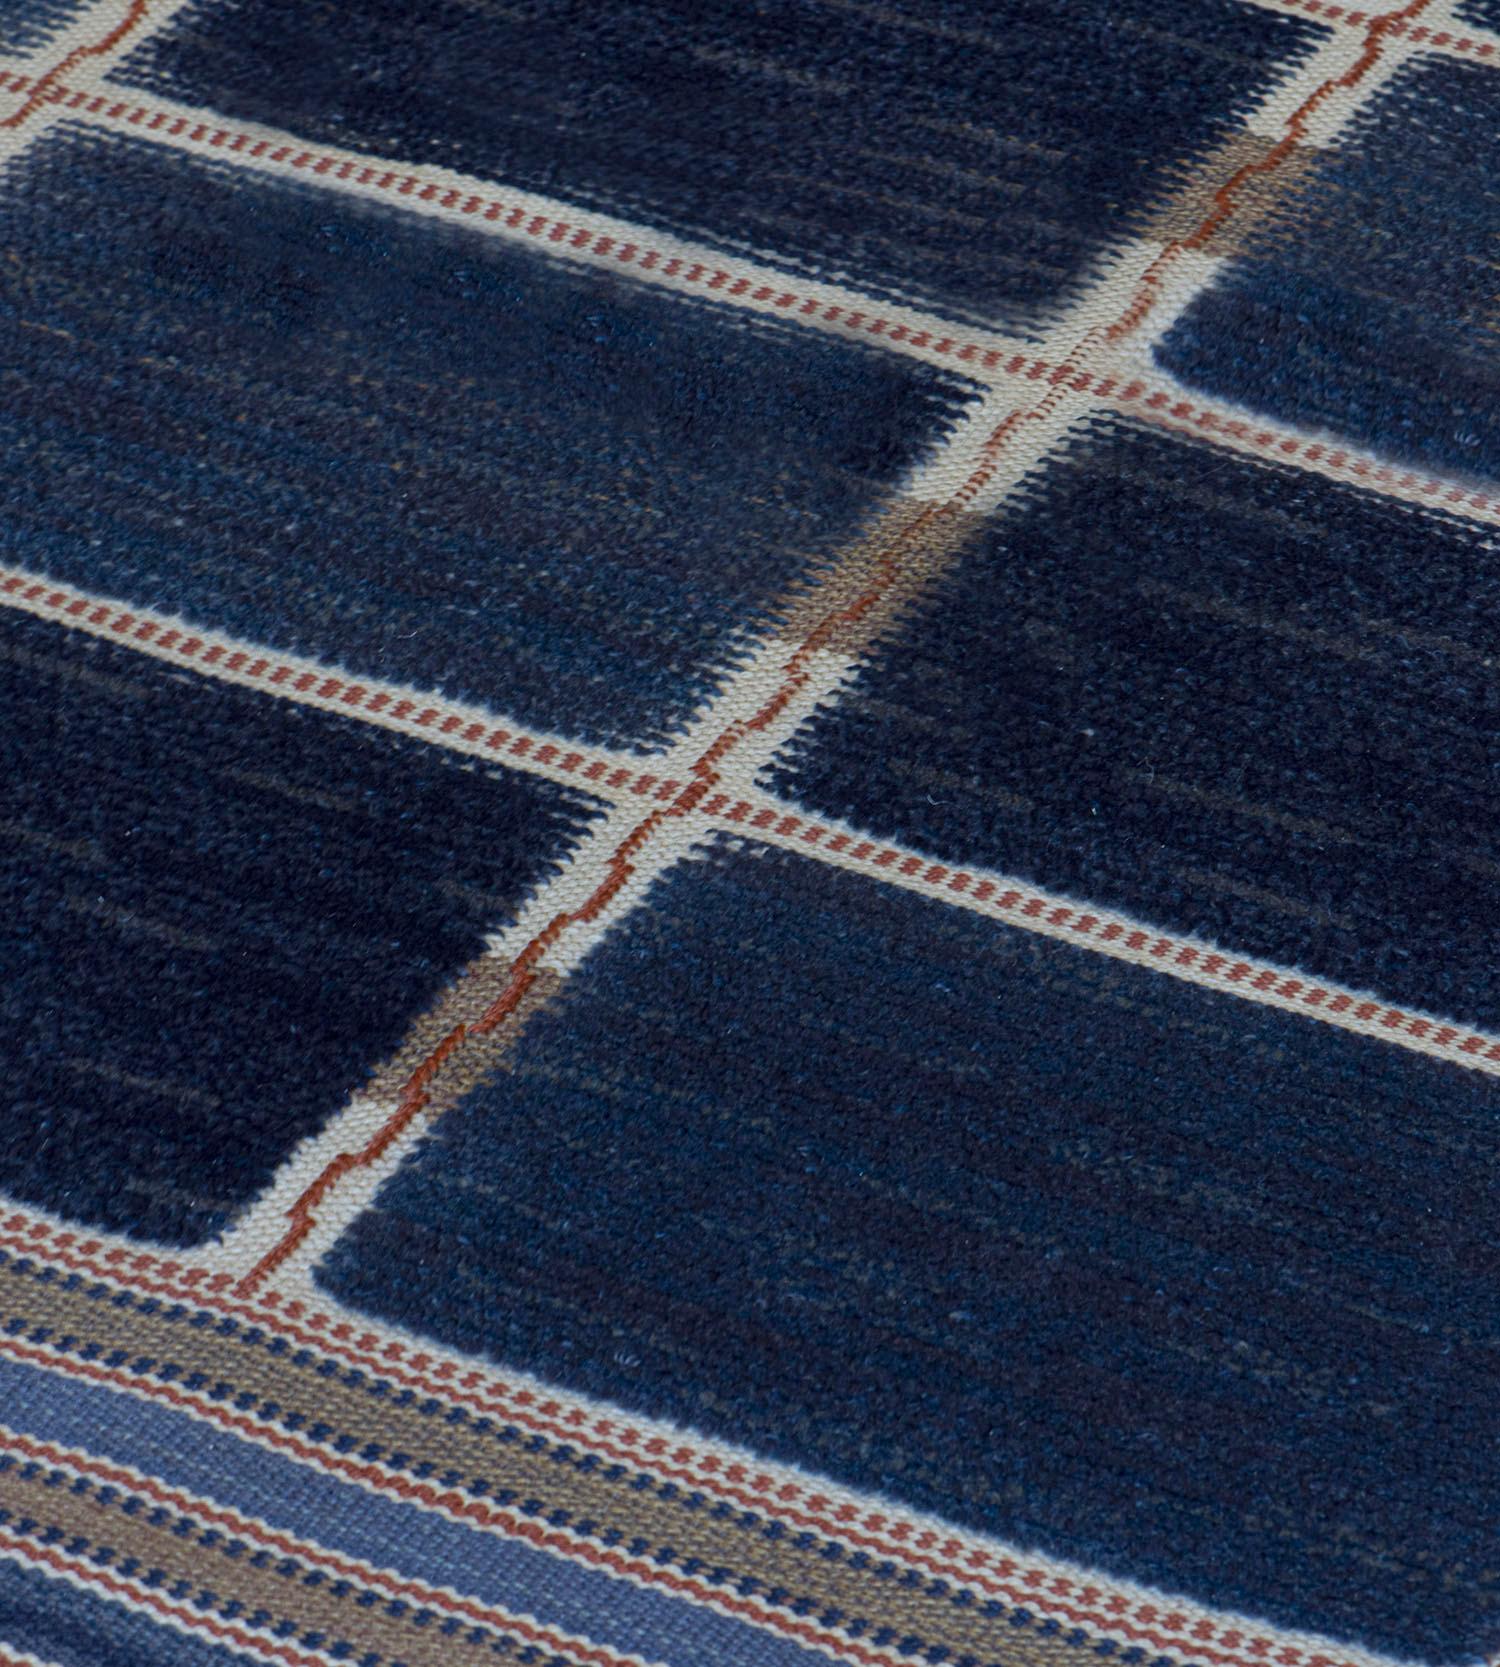 Dieser signierte schwedische Teppich zeigt ein Feld mit acht horizontalen und vier vertikalen Reihen aus tiefblauen und hellblauen rechteckigen Feldern, die durch ein Gerüst aus elfenbeinfarbenen und biskuitbraunen schmalen Streifen mit einer